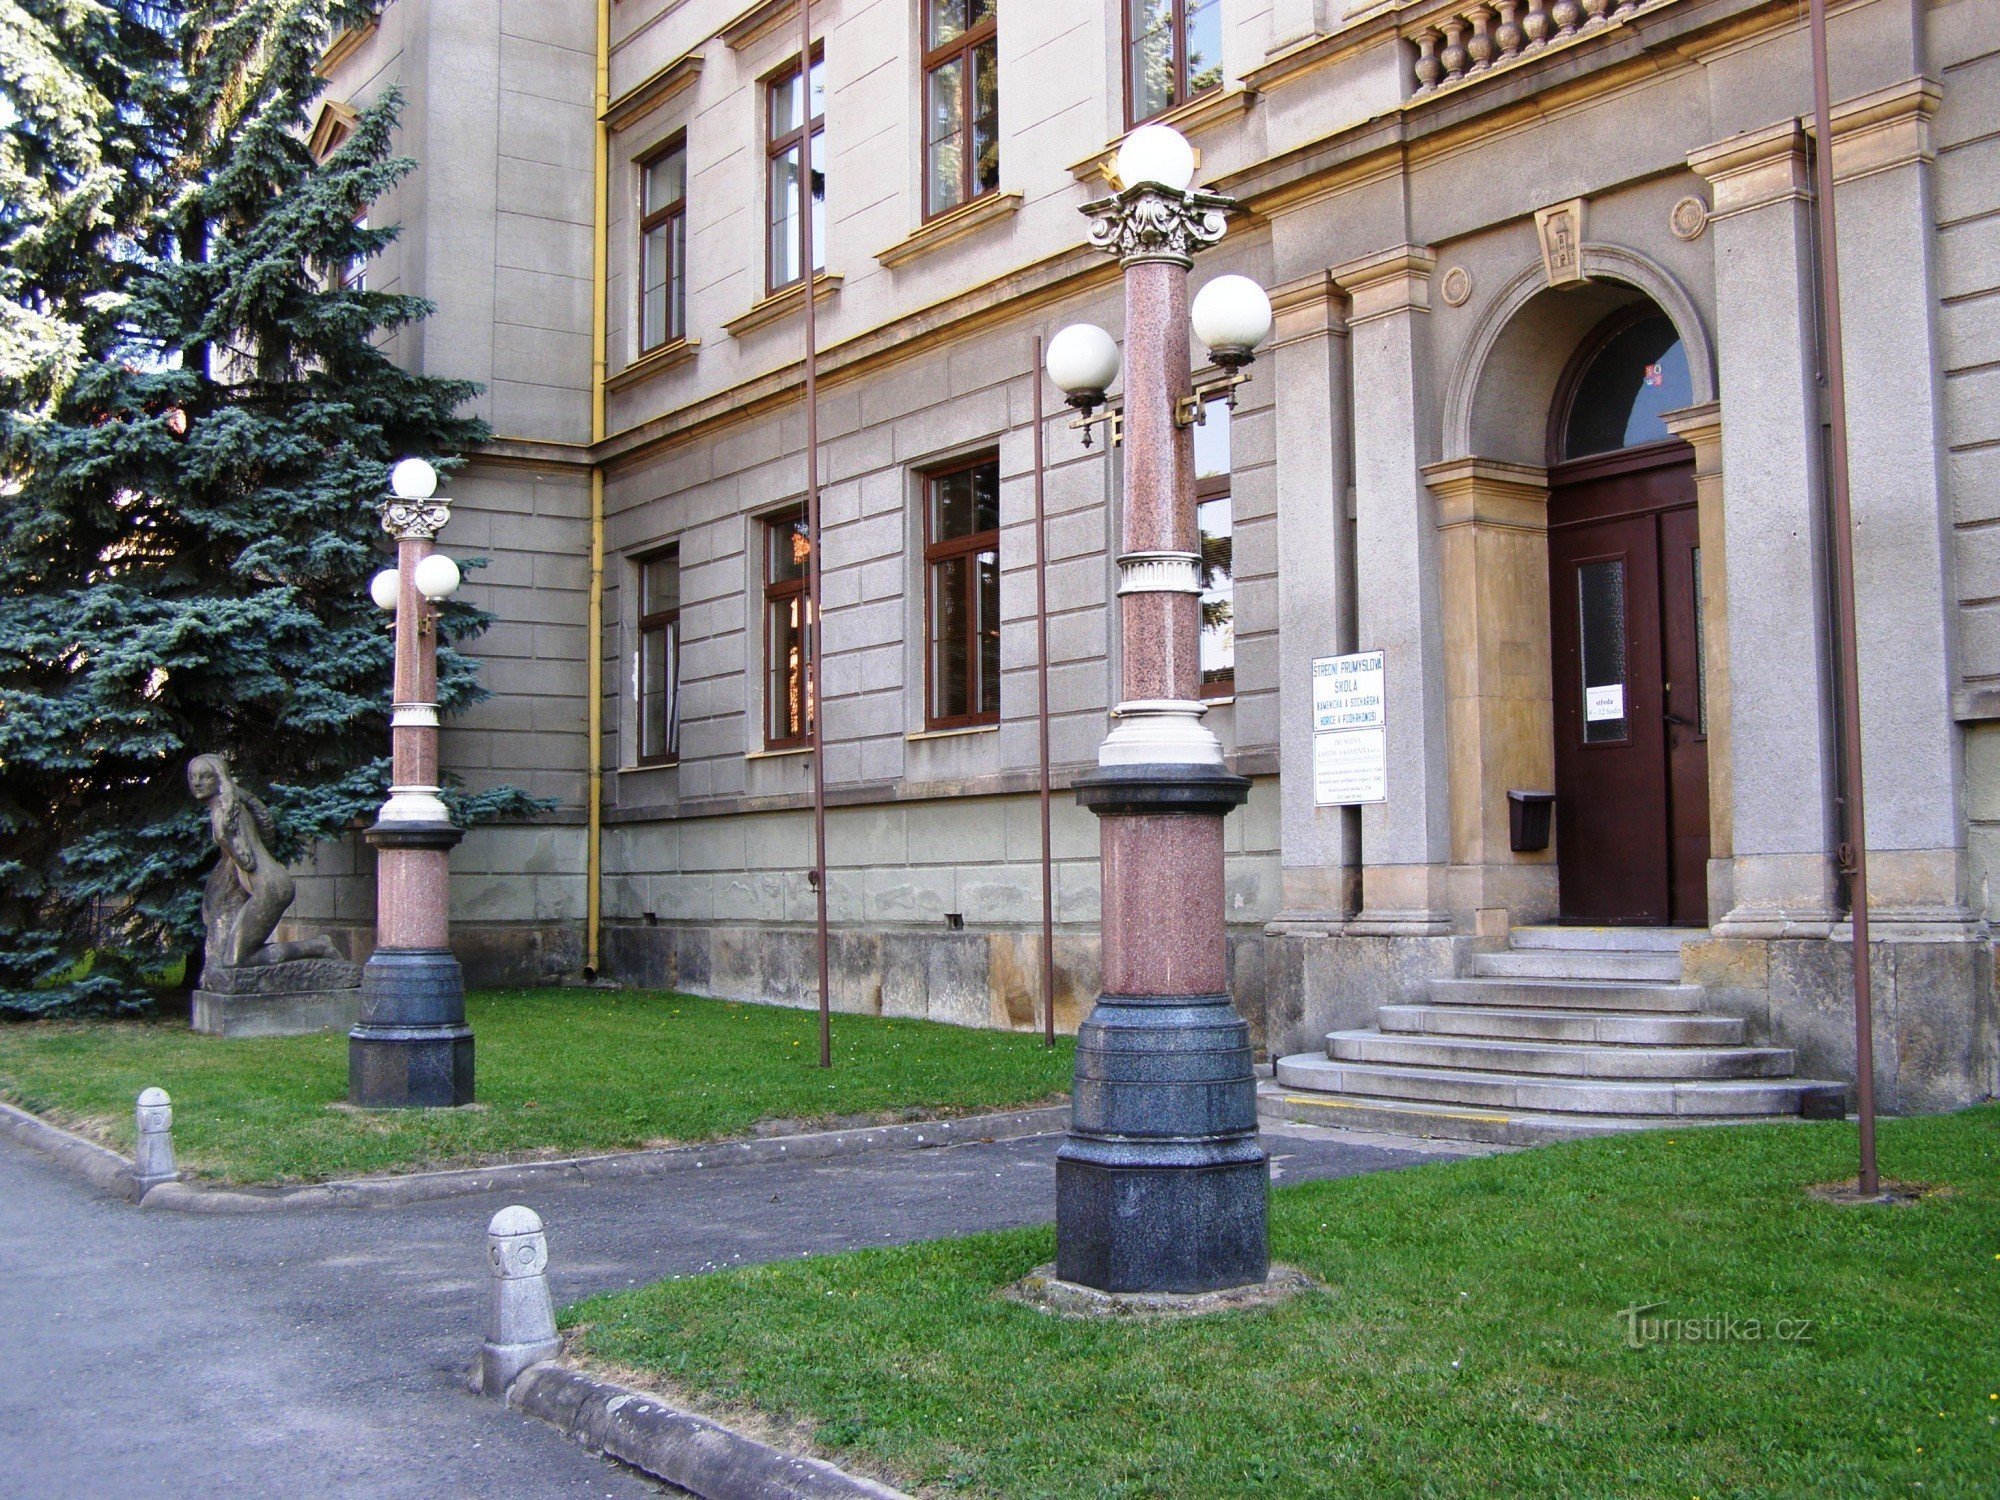 Hořice - skulptur og stenhuggerskole